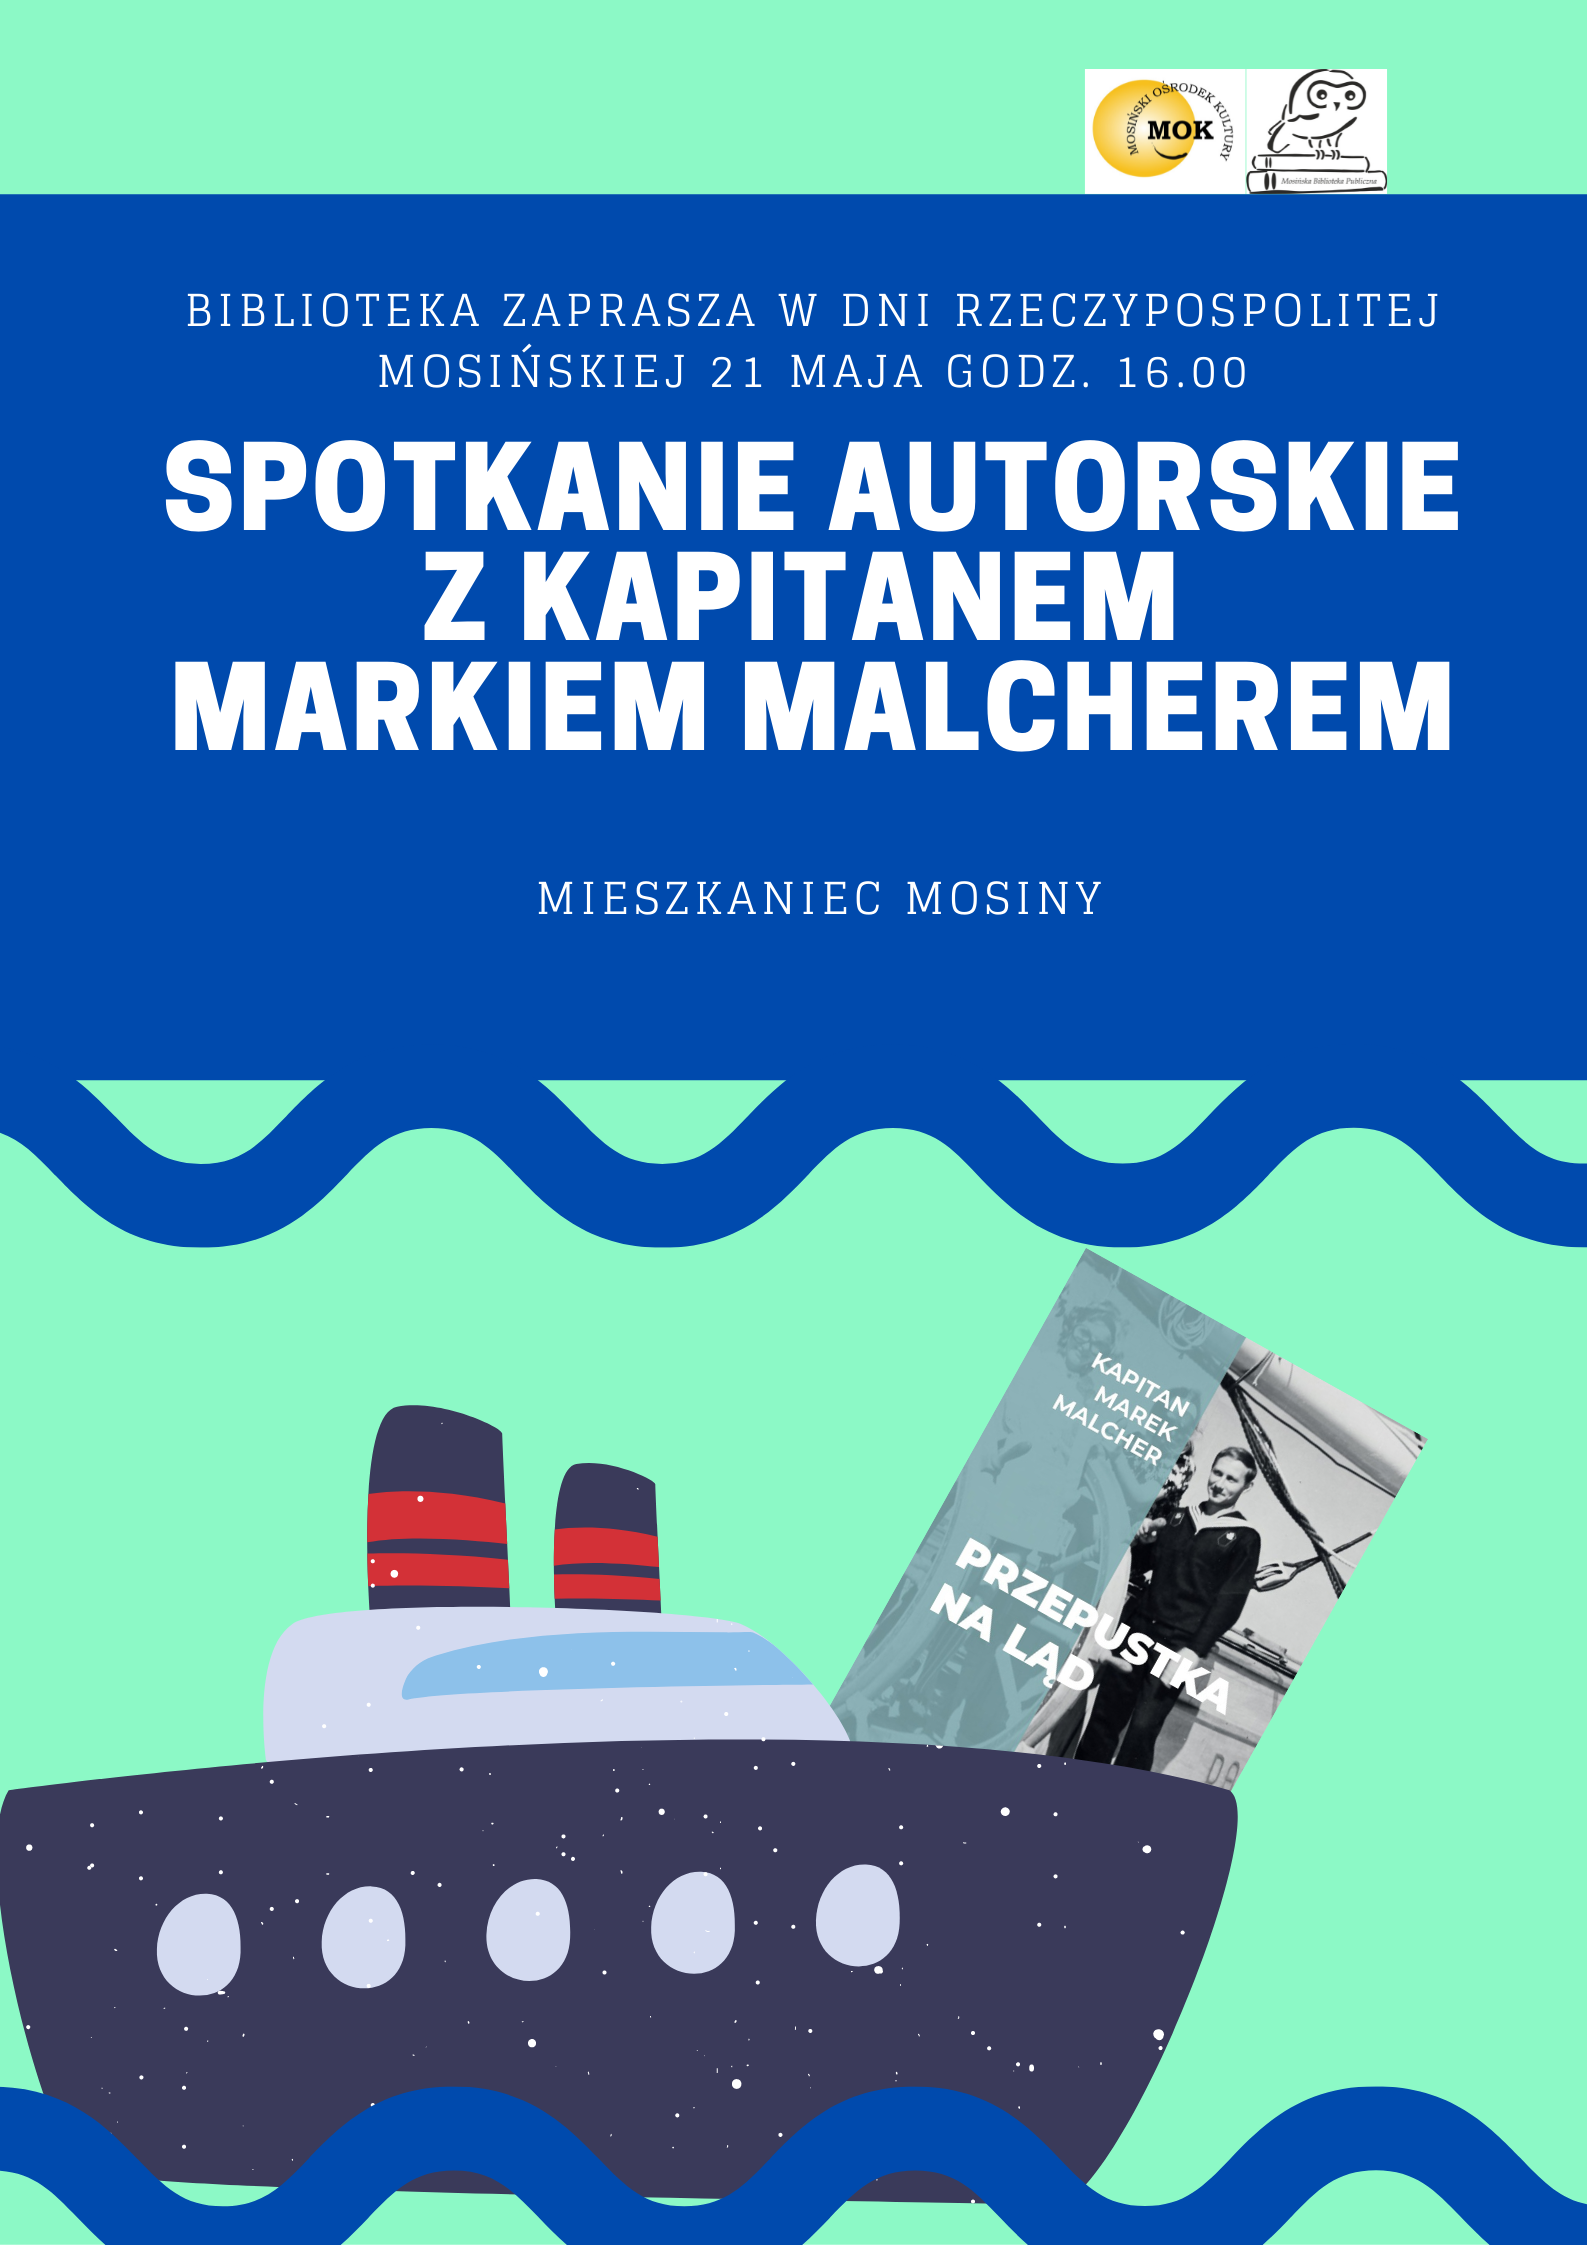 Plakat przedstawiający statek na falach i wystającą z  niego książkę. Zaprasza na spotkanie autorskie z kapitanem 21 maja o godz. 16